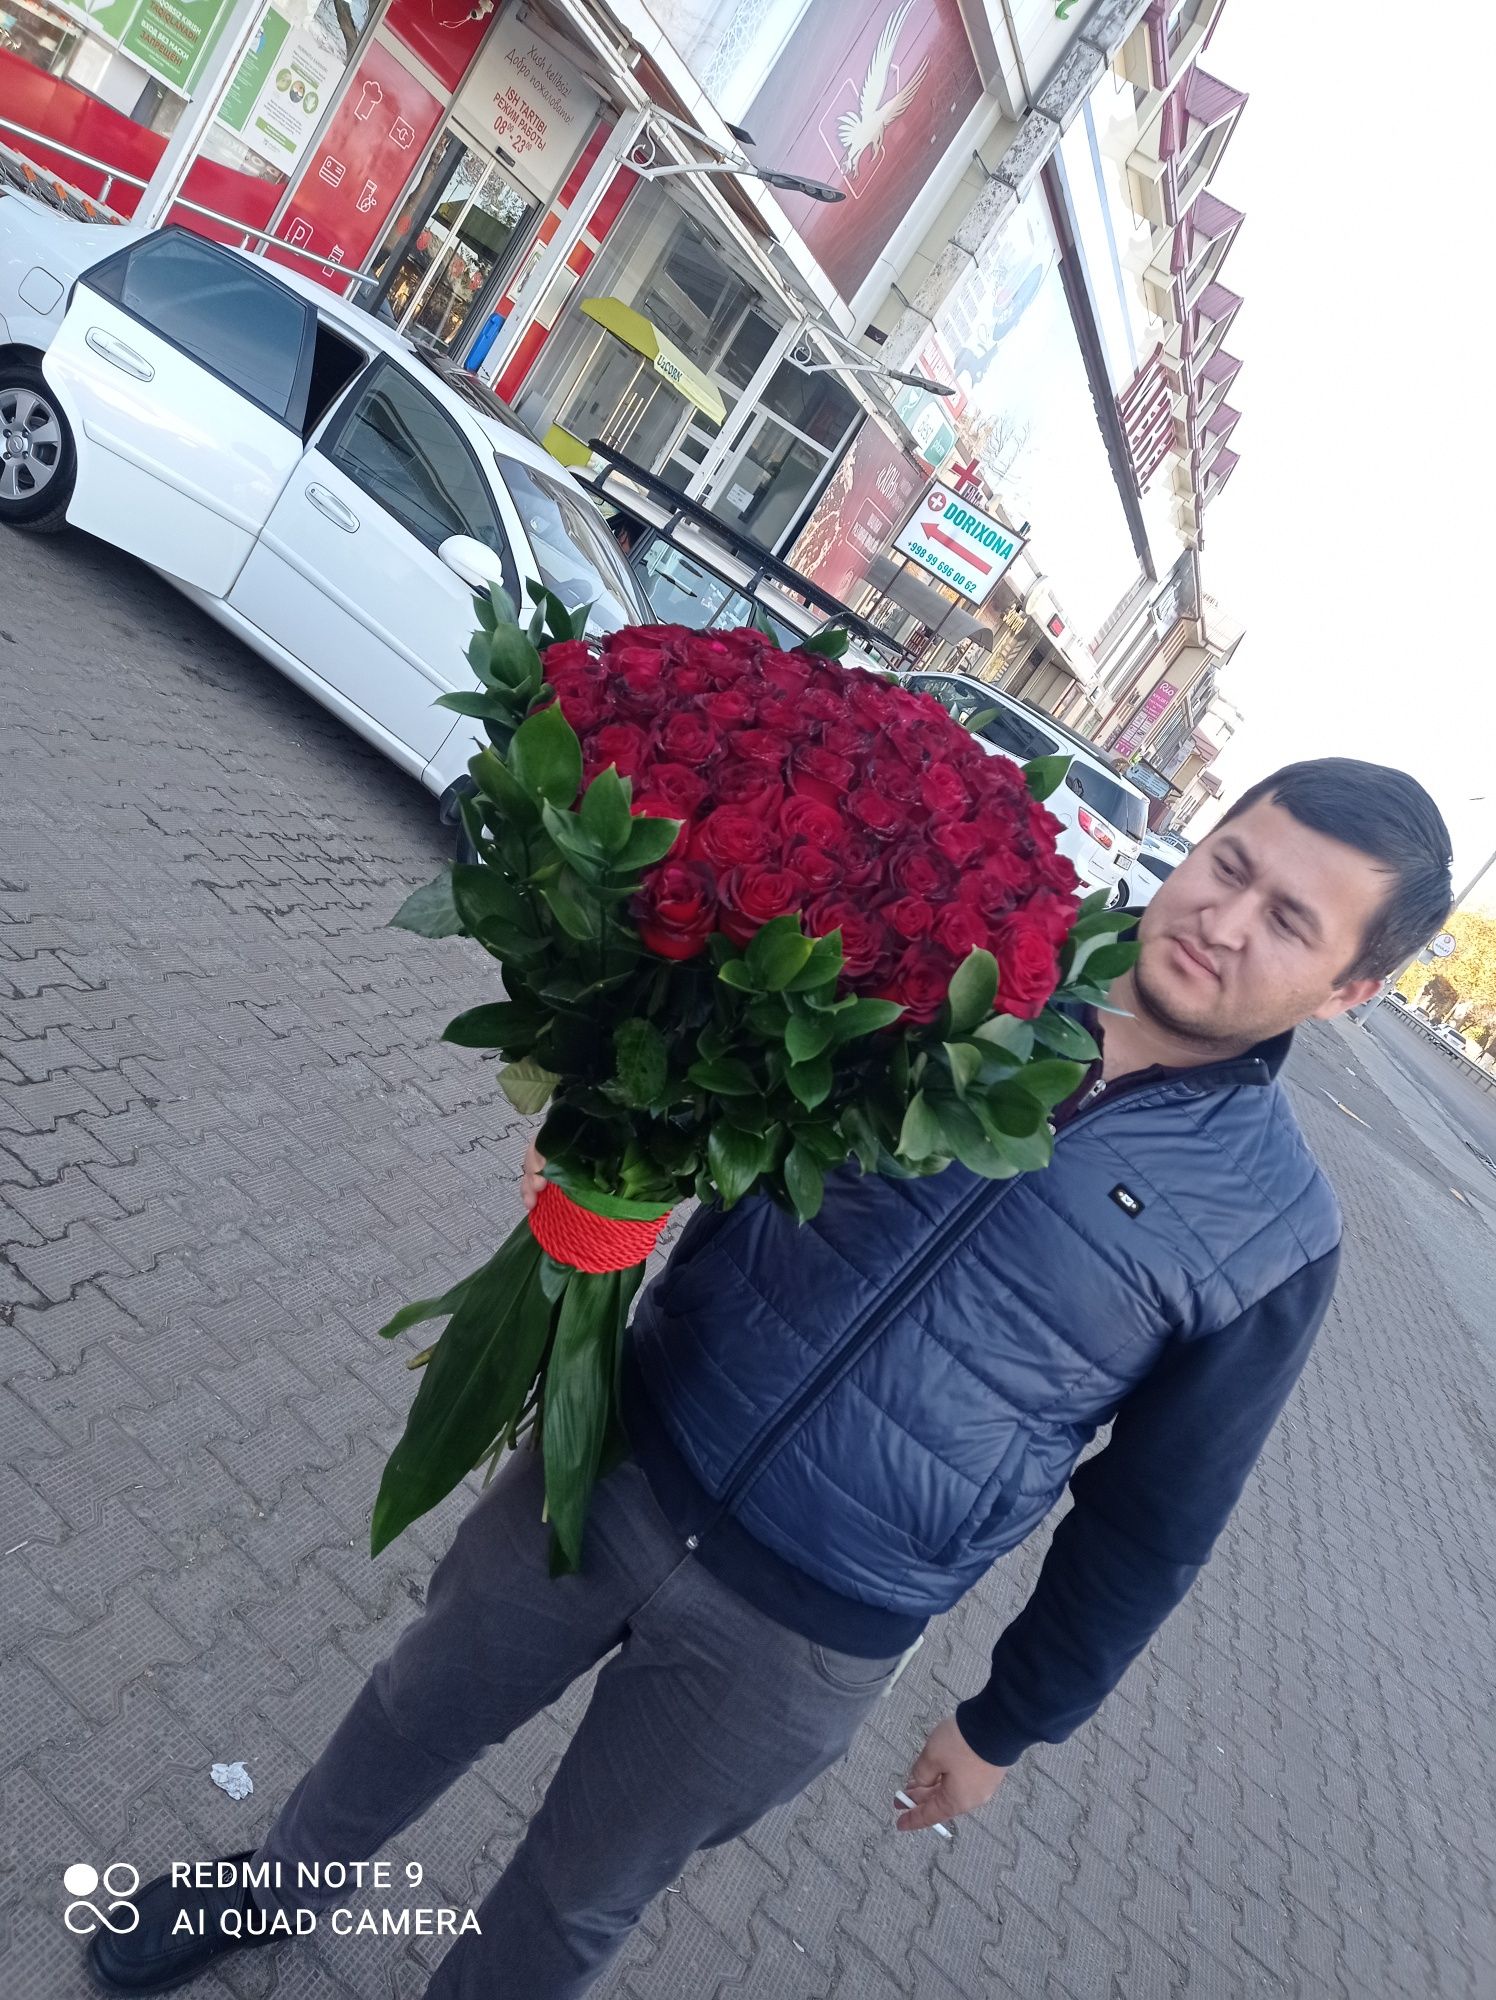 Gul dostavka qilamiz toshkent shahar boyicha bepul yetkazib beramiz